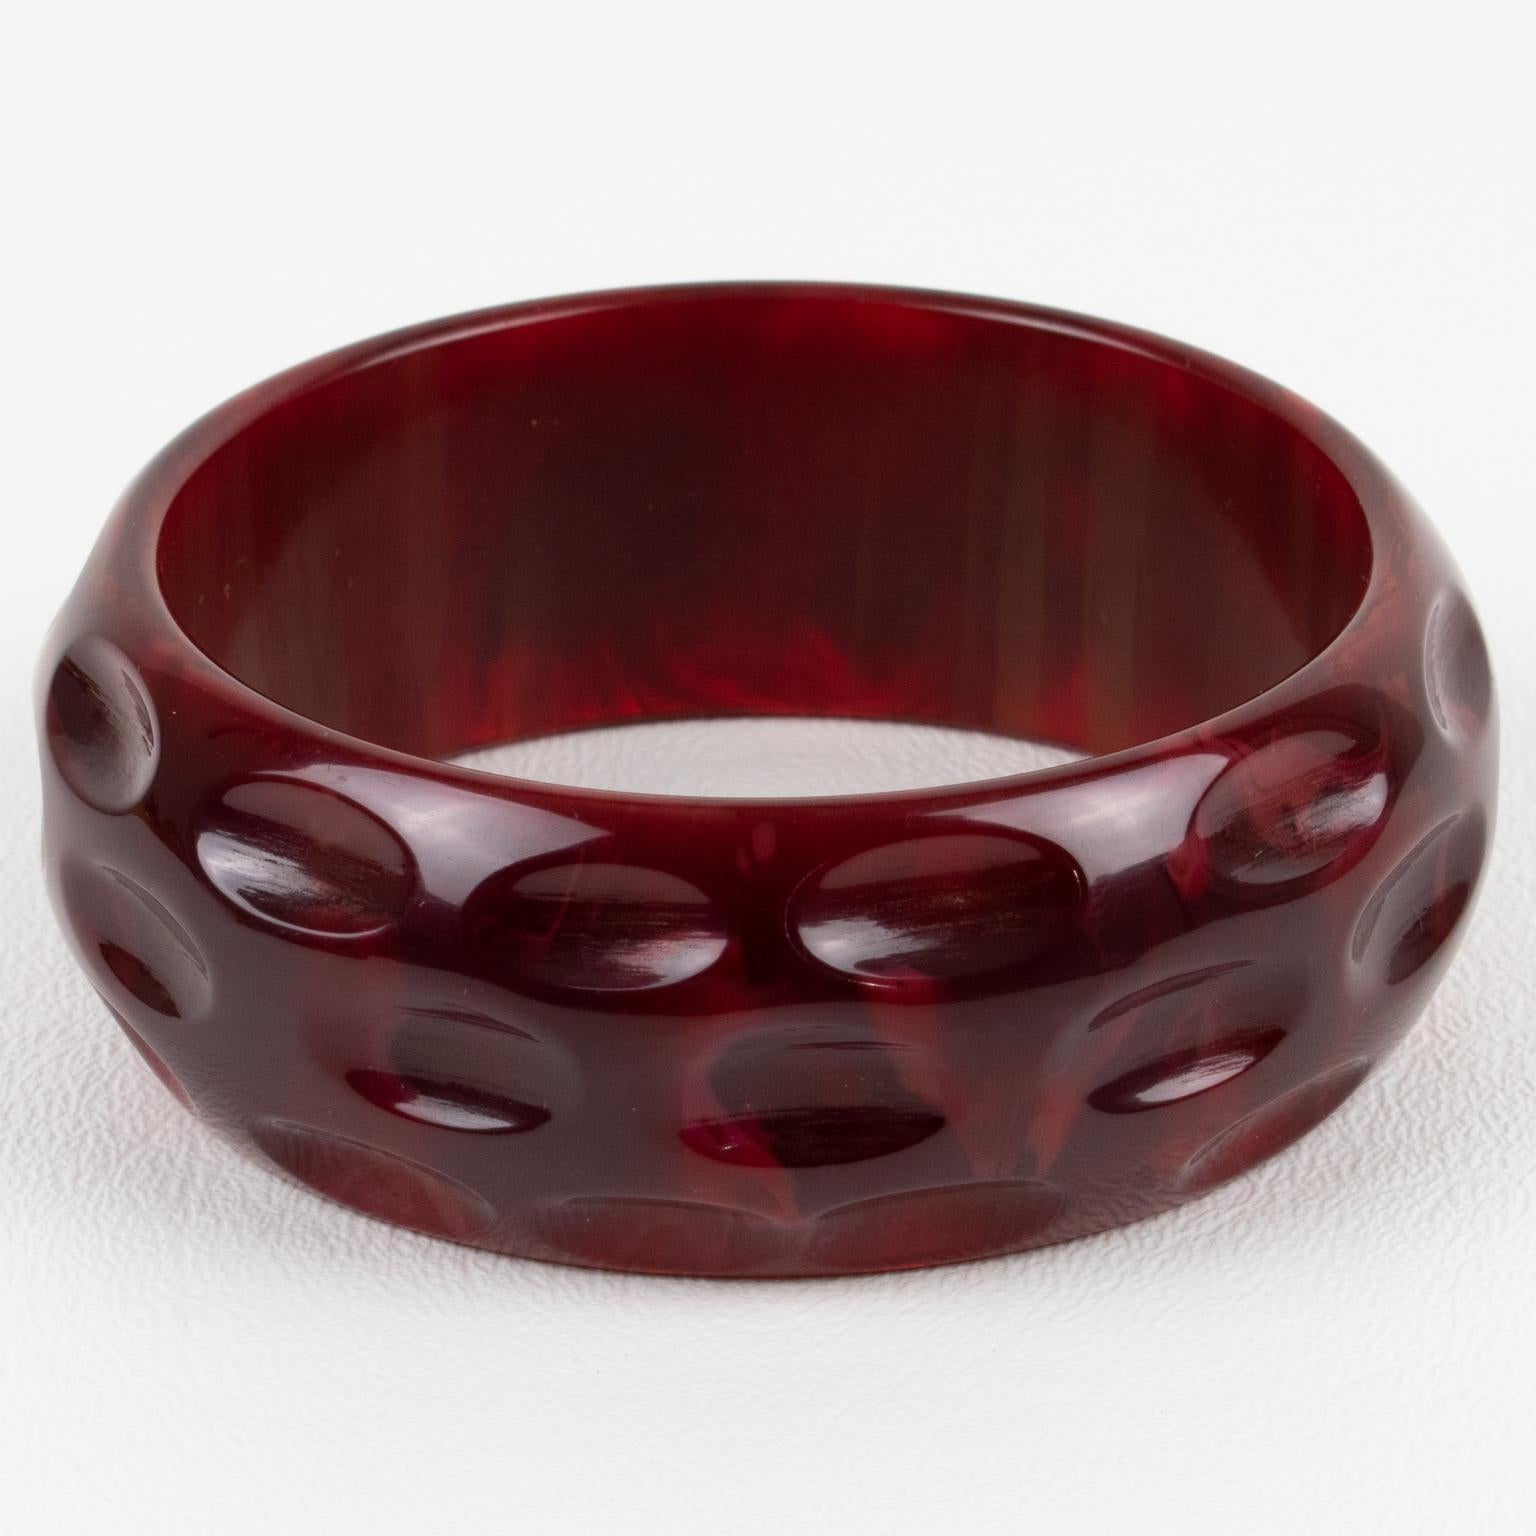 Il s'agit d'un superbe bracelet en bakélite marbrée rouge cramoisi. Il présente une forme de dôme massif avec des motifs géométriques et profondément sculptés. La couleur est un ton de marbre rouge intense avec des tourbillons nuageux. 
Mesures : Le